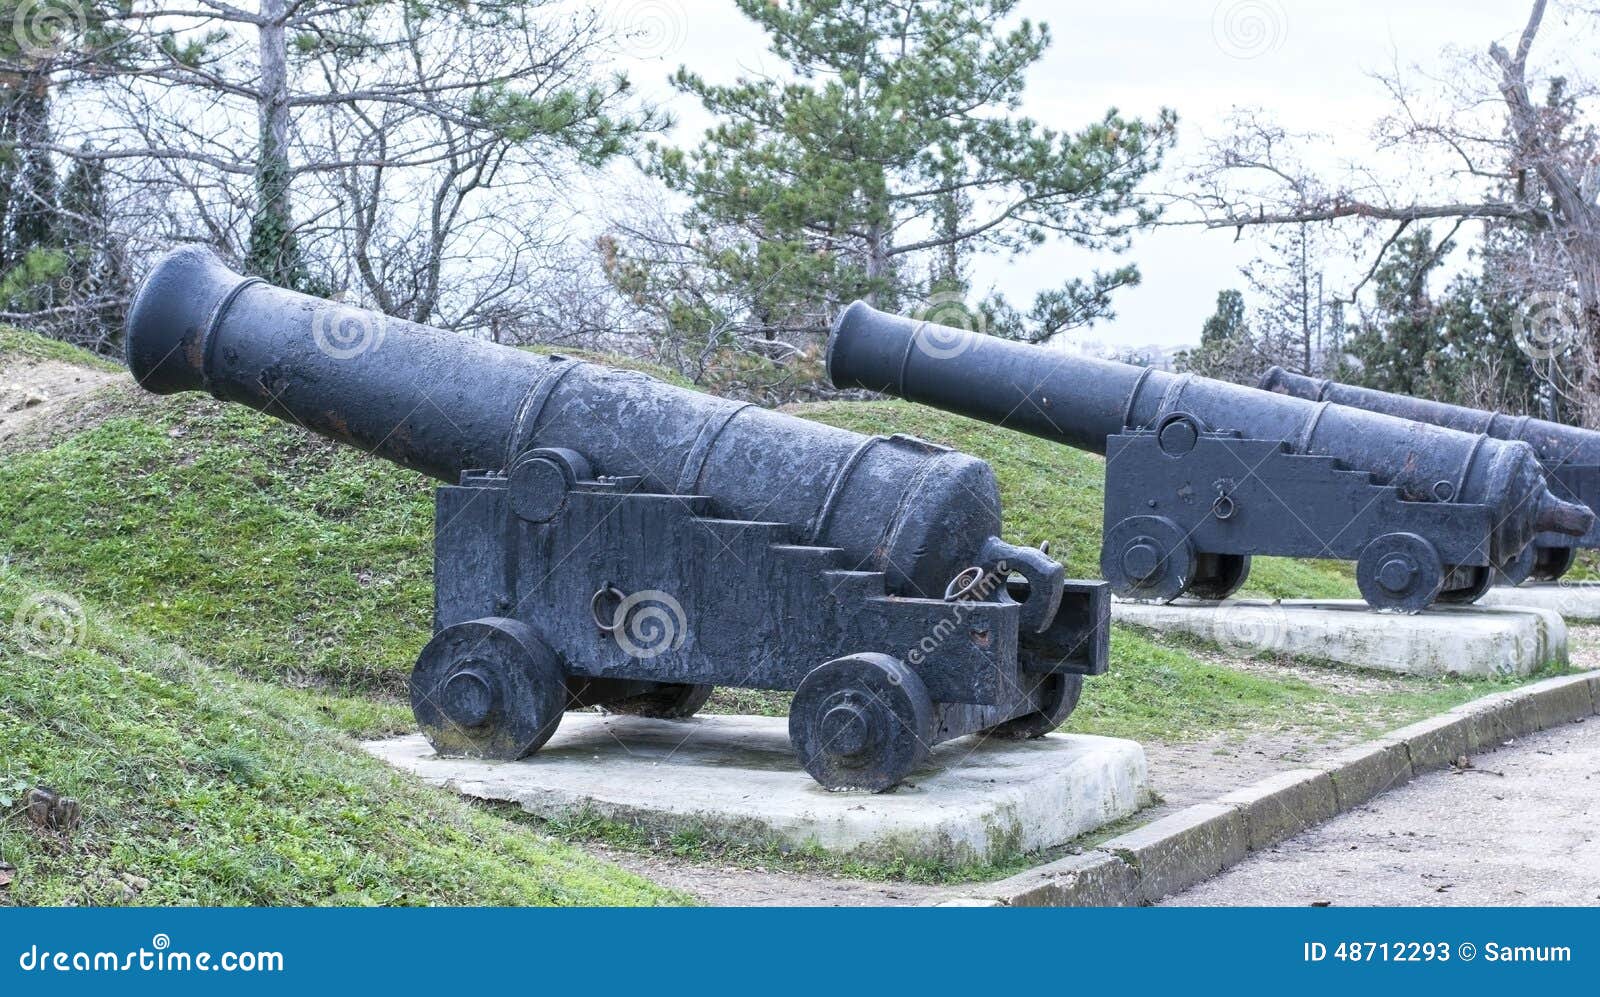 Παλαιό πυροβόλο όπλο σκαφών σε μια παράκτια θέση. παράκτιο ανησυχίας της Κριμαίας πυροβόλων όπλων πυροβόλων όπλων malahov παλαιό σκάφος της Σεβαστούπολης θέσης 1854 χειραμάξιων στον πόλεμο Ανησυχία πυροβόλων όπλων στον της Κριμαίας πόλεμο 1854